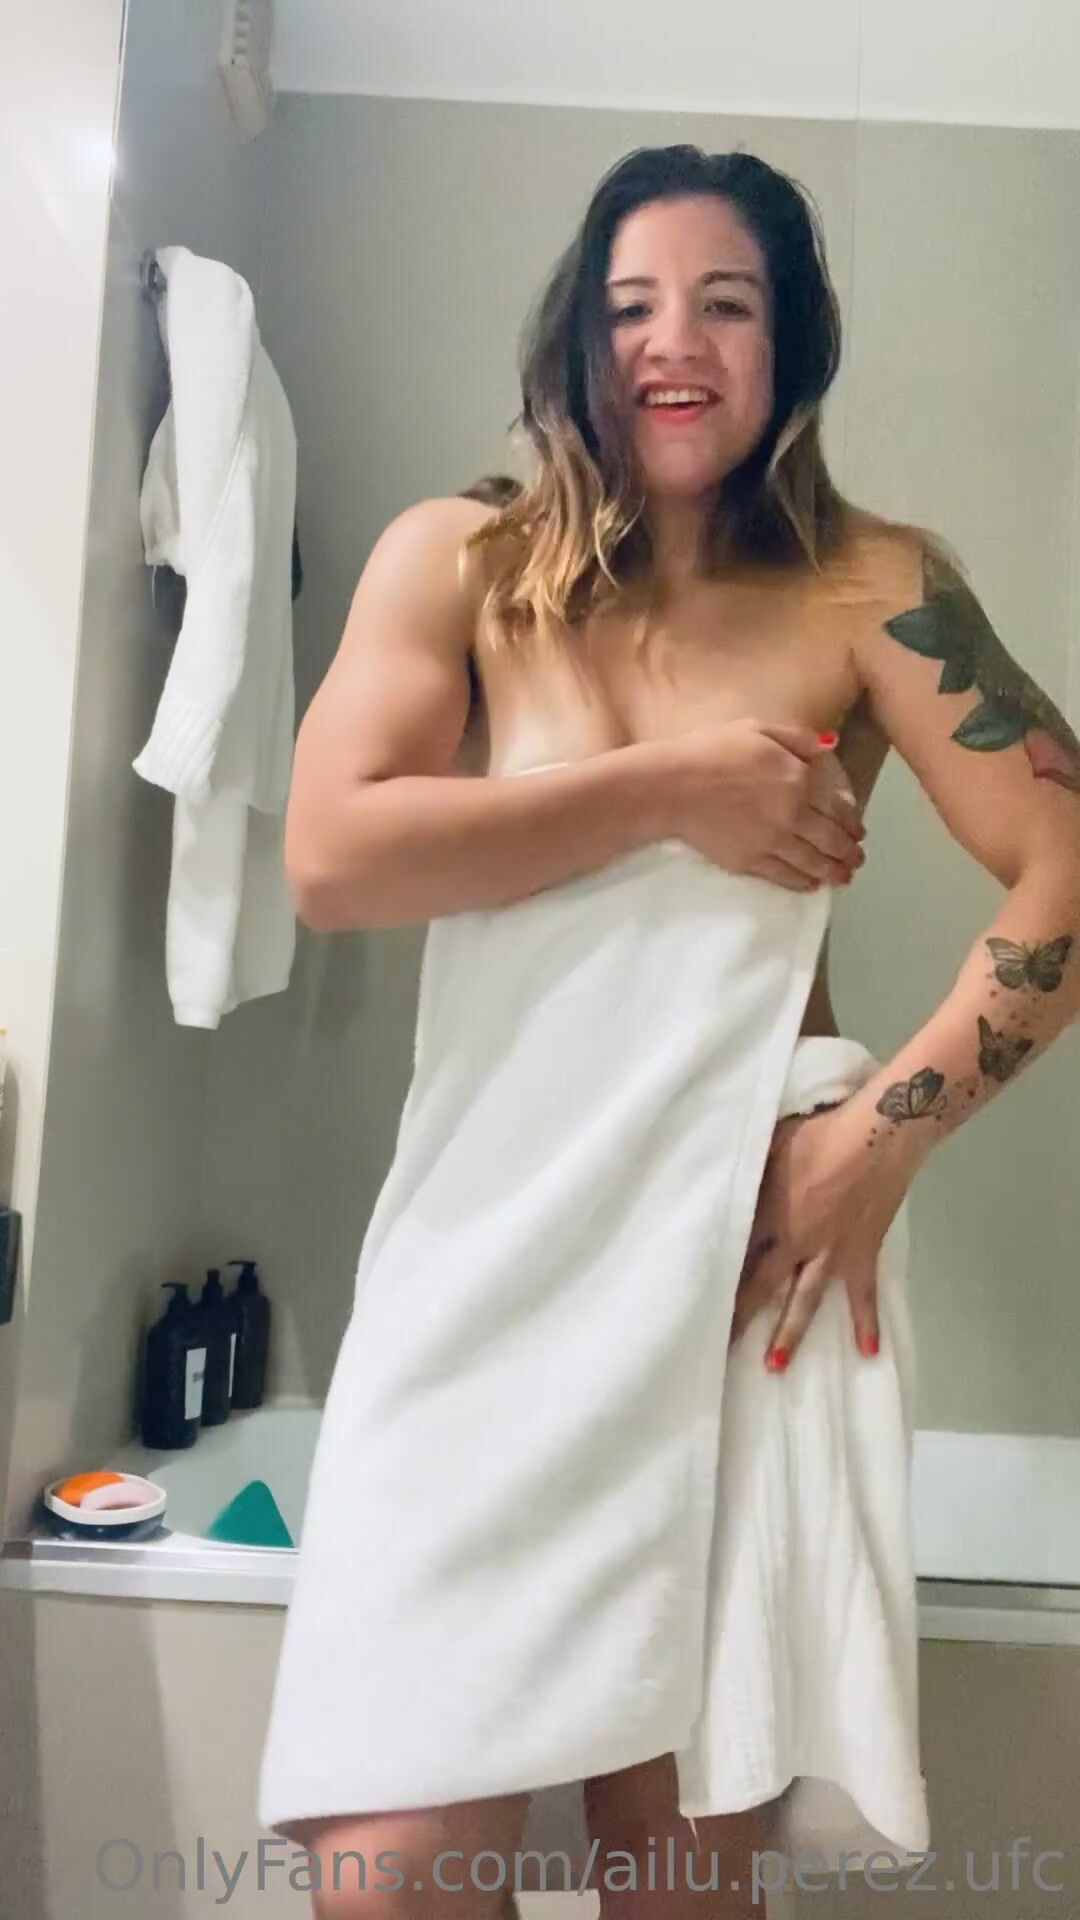 Ailin Perez UFC Fighter Towel Striptease